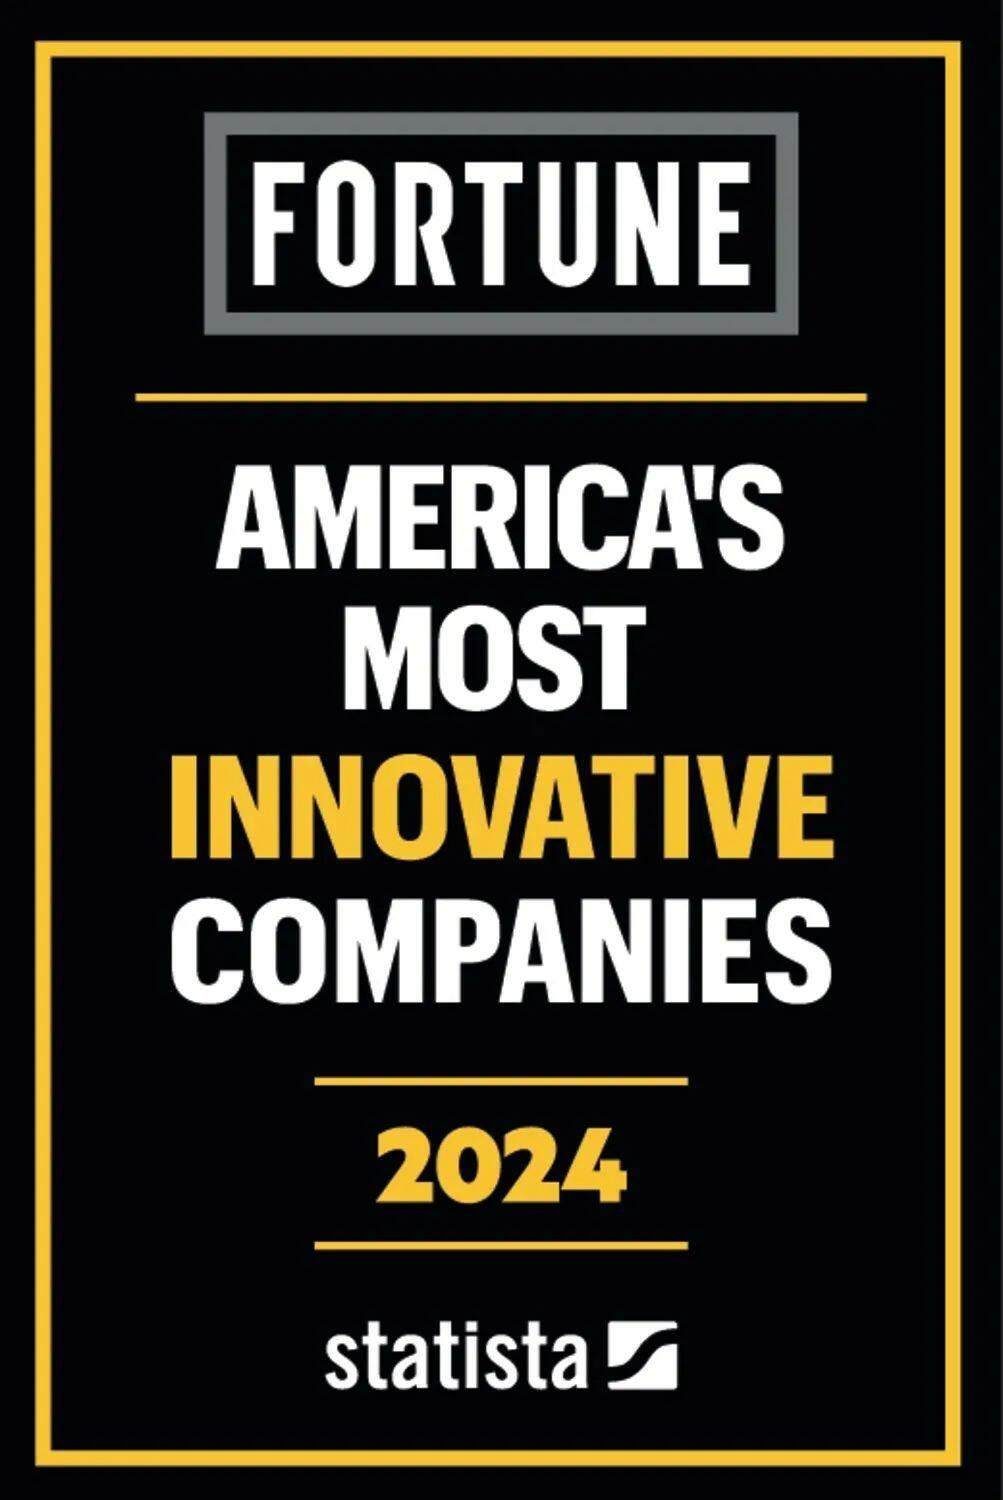 铁姆肯公司被《财富》杂志评为美国最具创新力公司之一